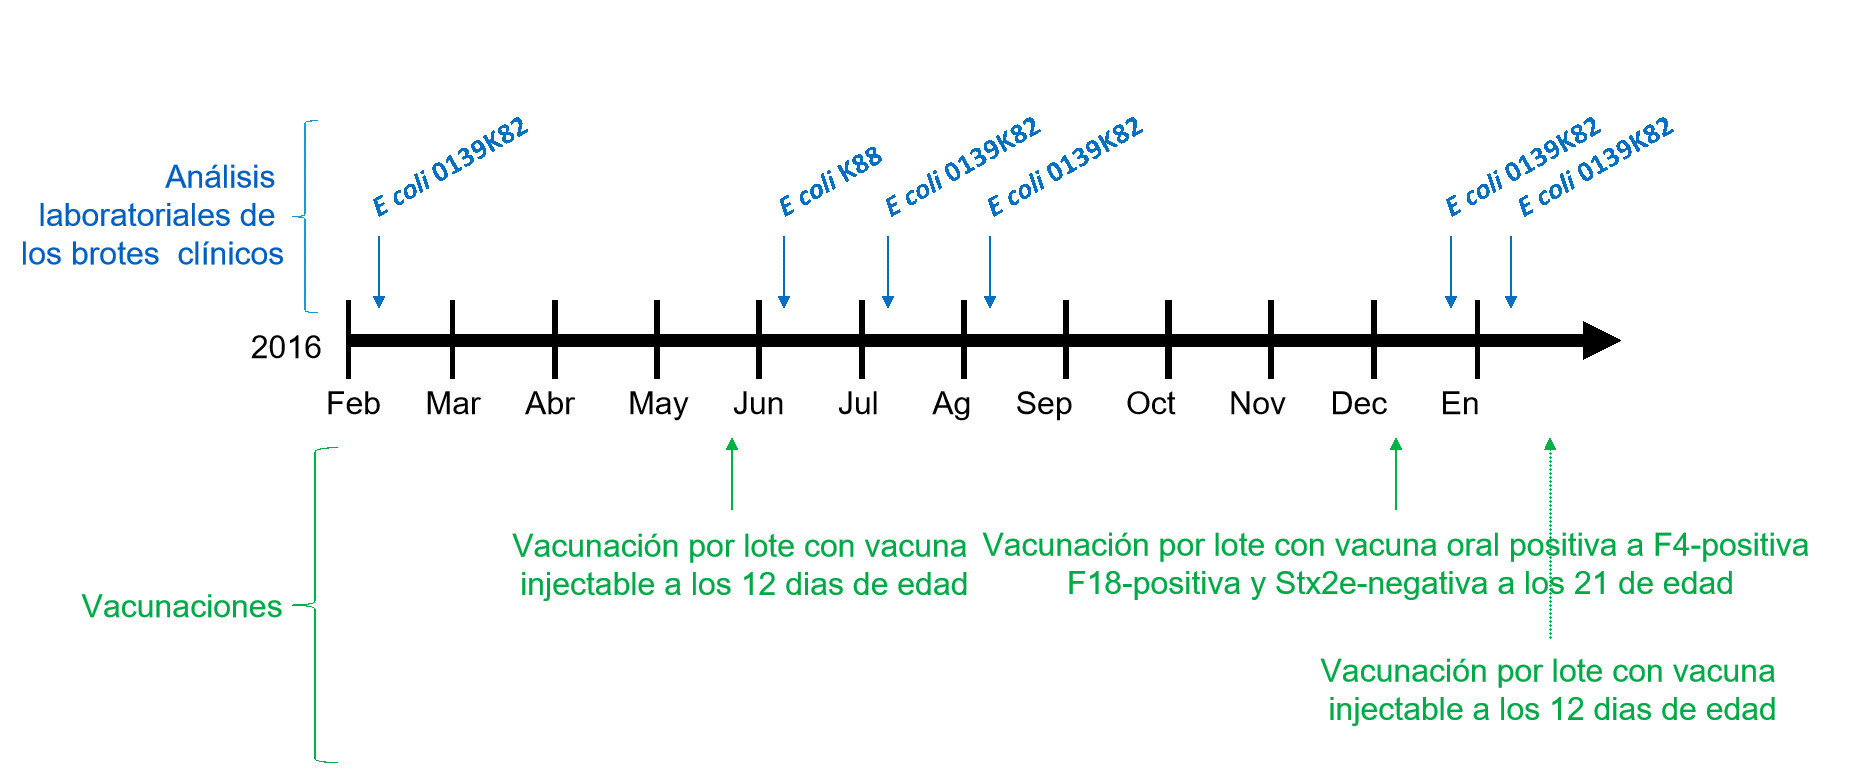 <p>Imagen 1: An&aacute;lisis de laboratorio de los brotes cl&iacute;nicos y calendario de vacunaciones</p>
